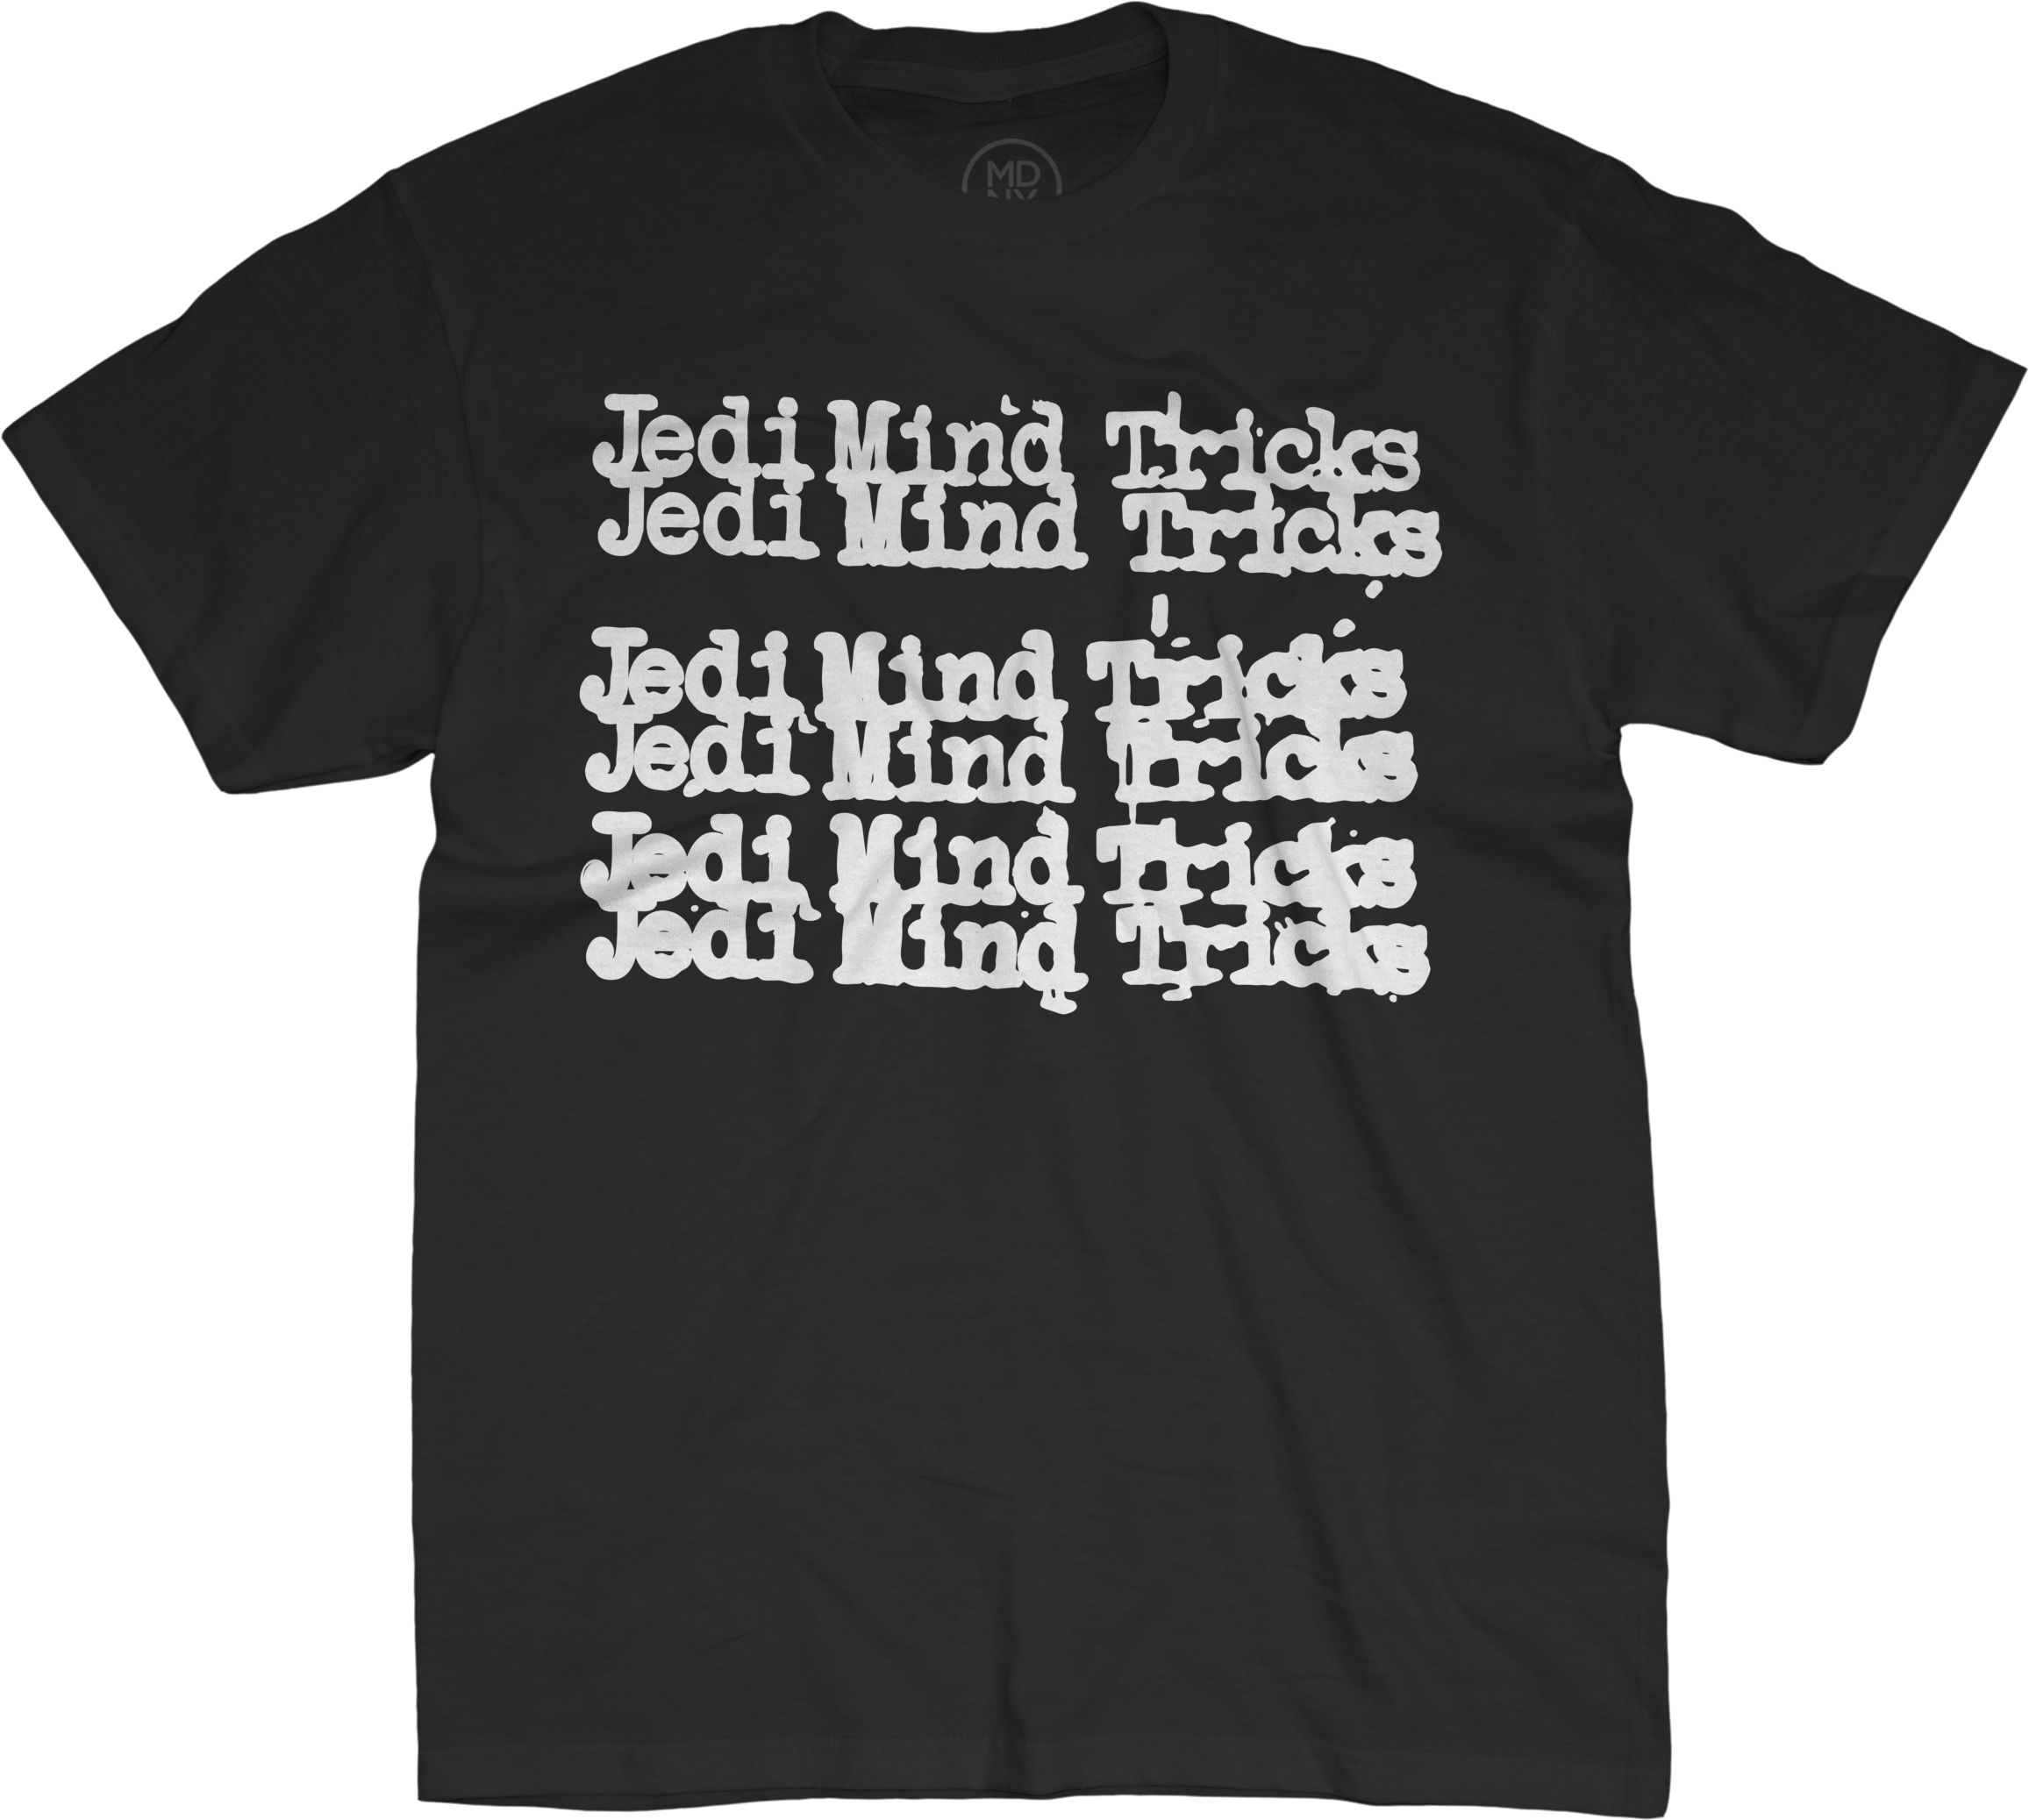 Jedi Mind Tricks Repeat On Black T-shirt $28 - Marshawn Lynch Trump Shirt (2313x2075), Png Download